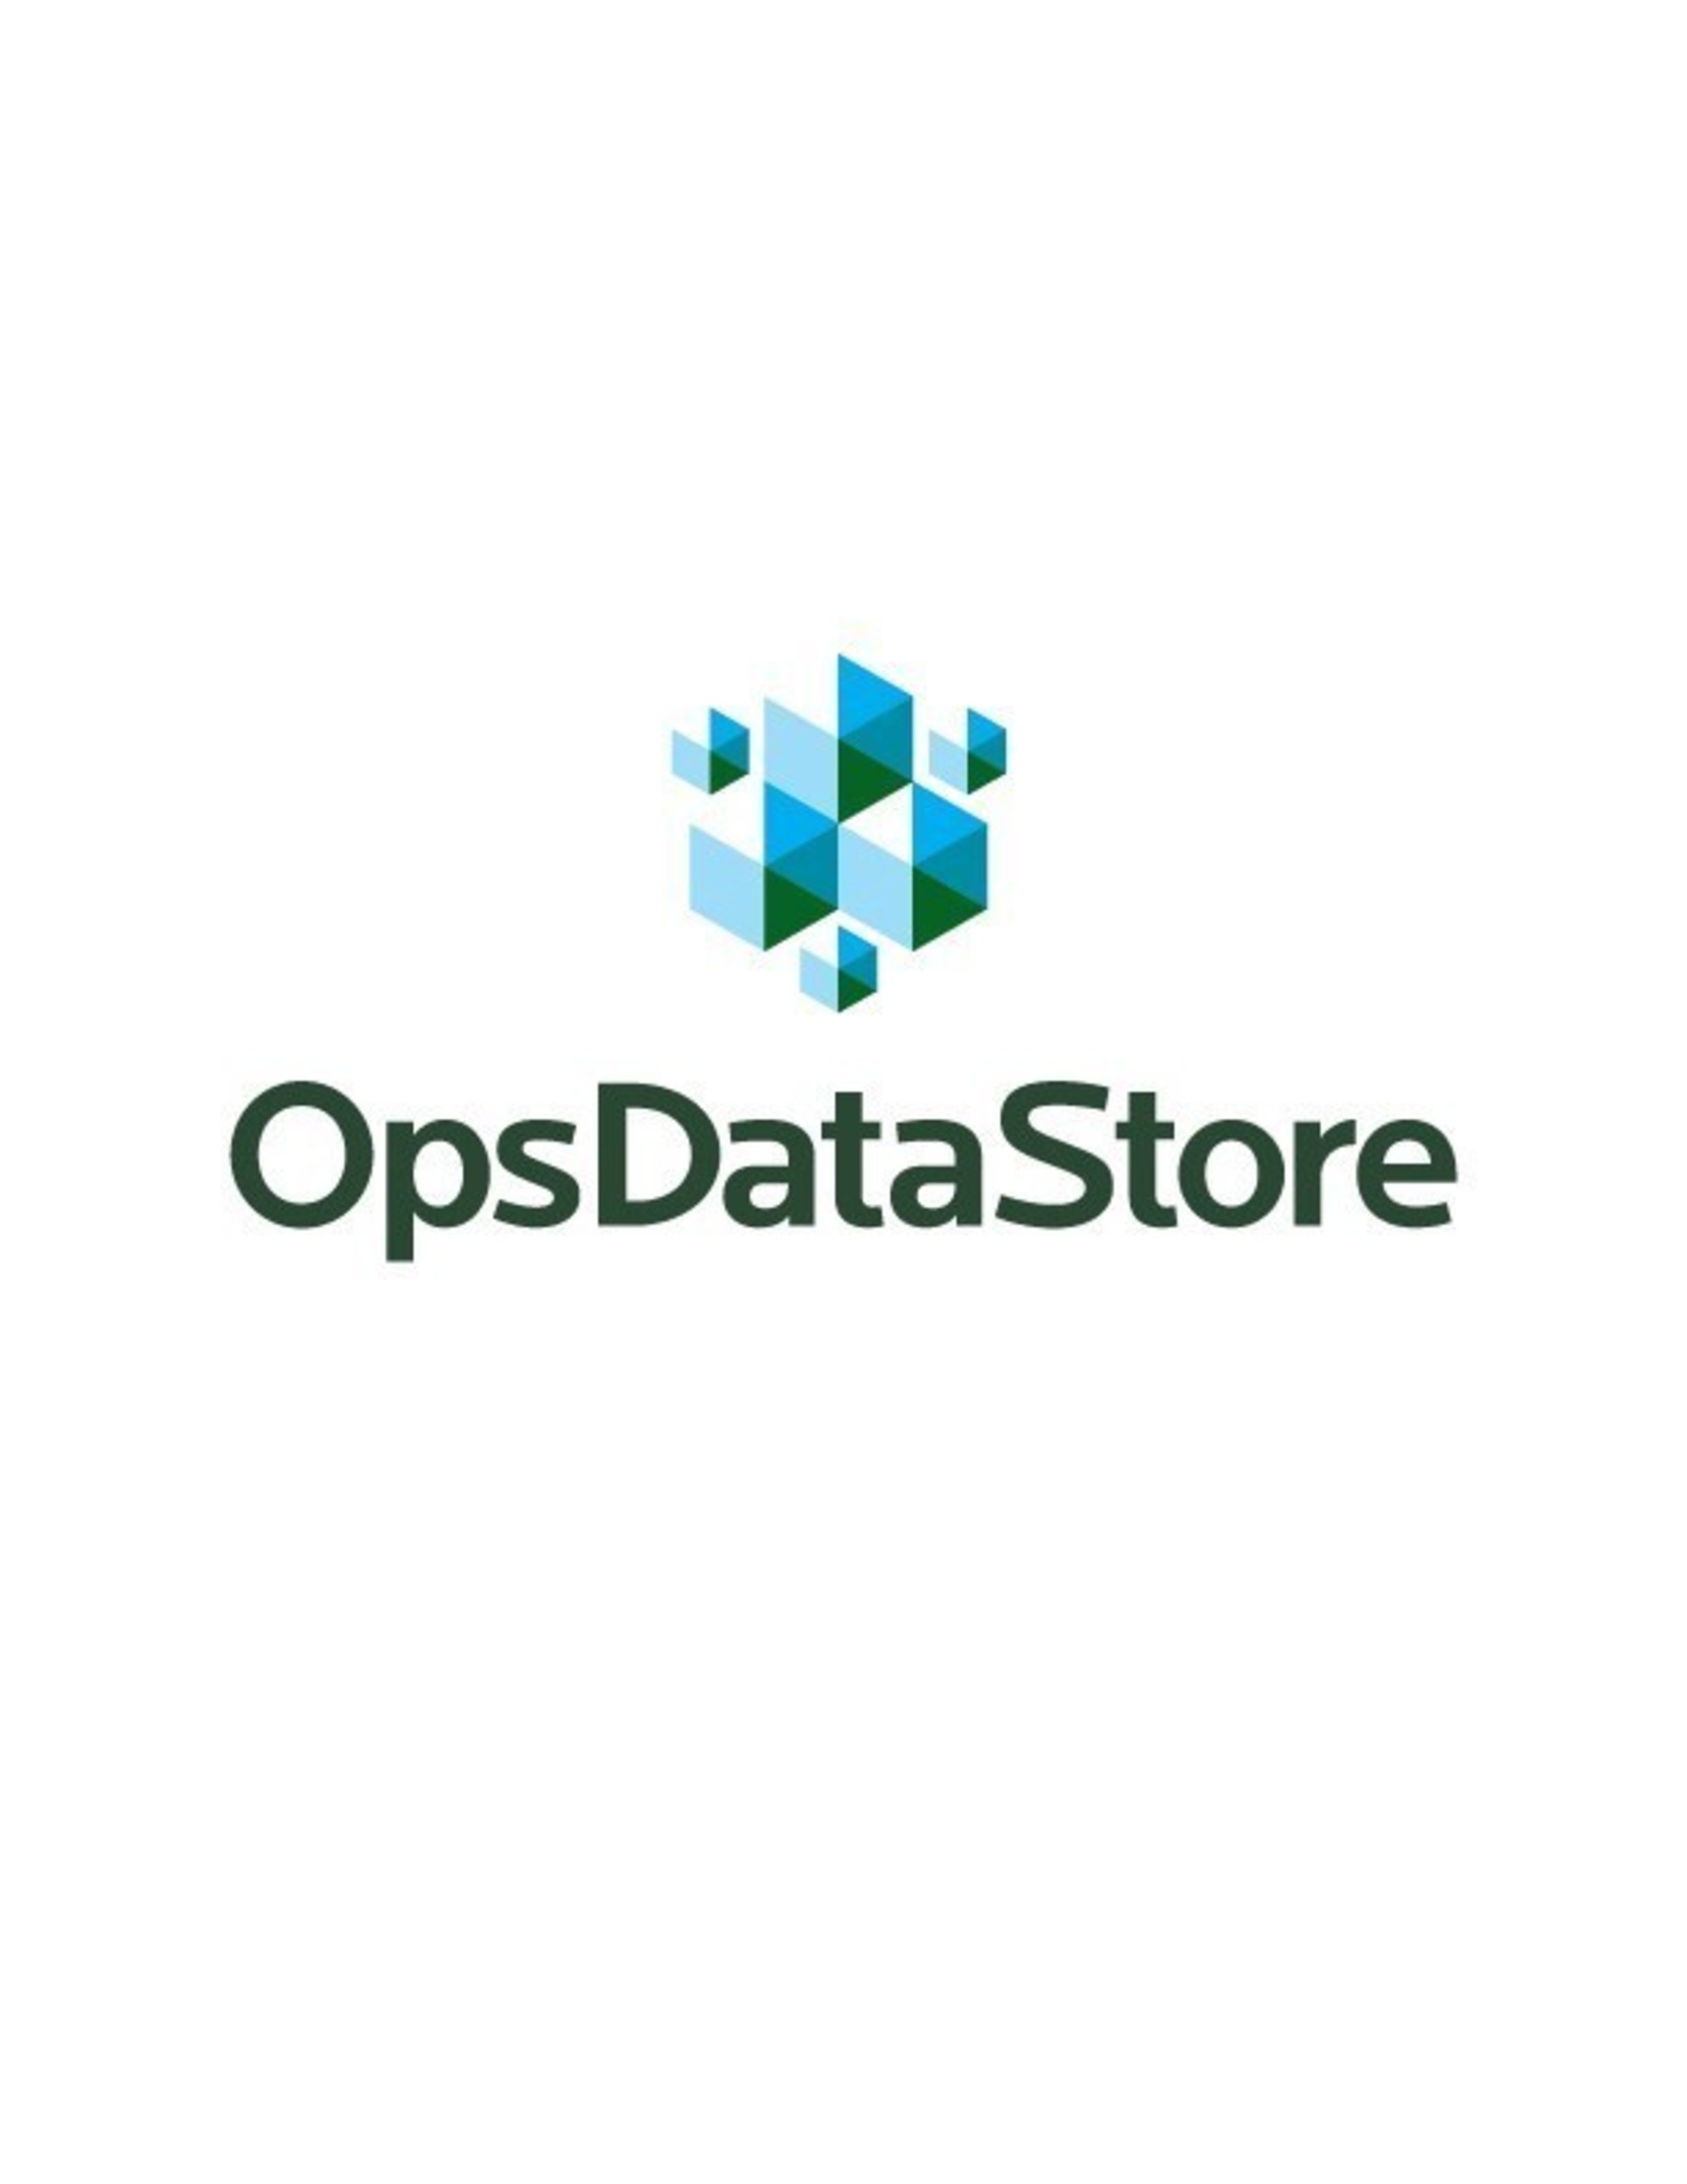 OpsDataStore Logo (PRNewsFoto/OpsDataStore)